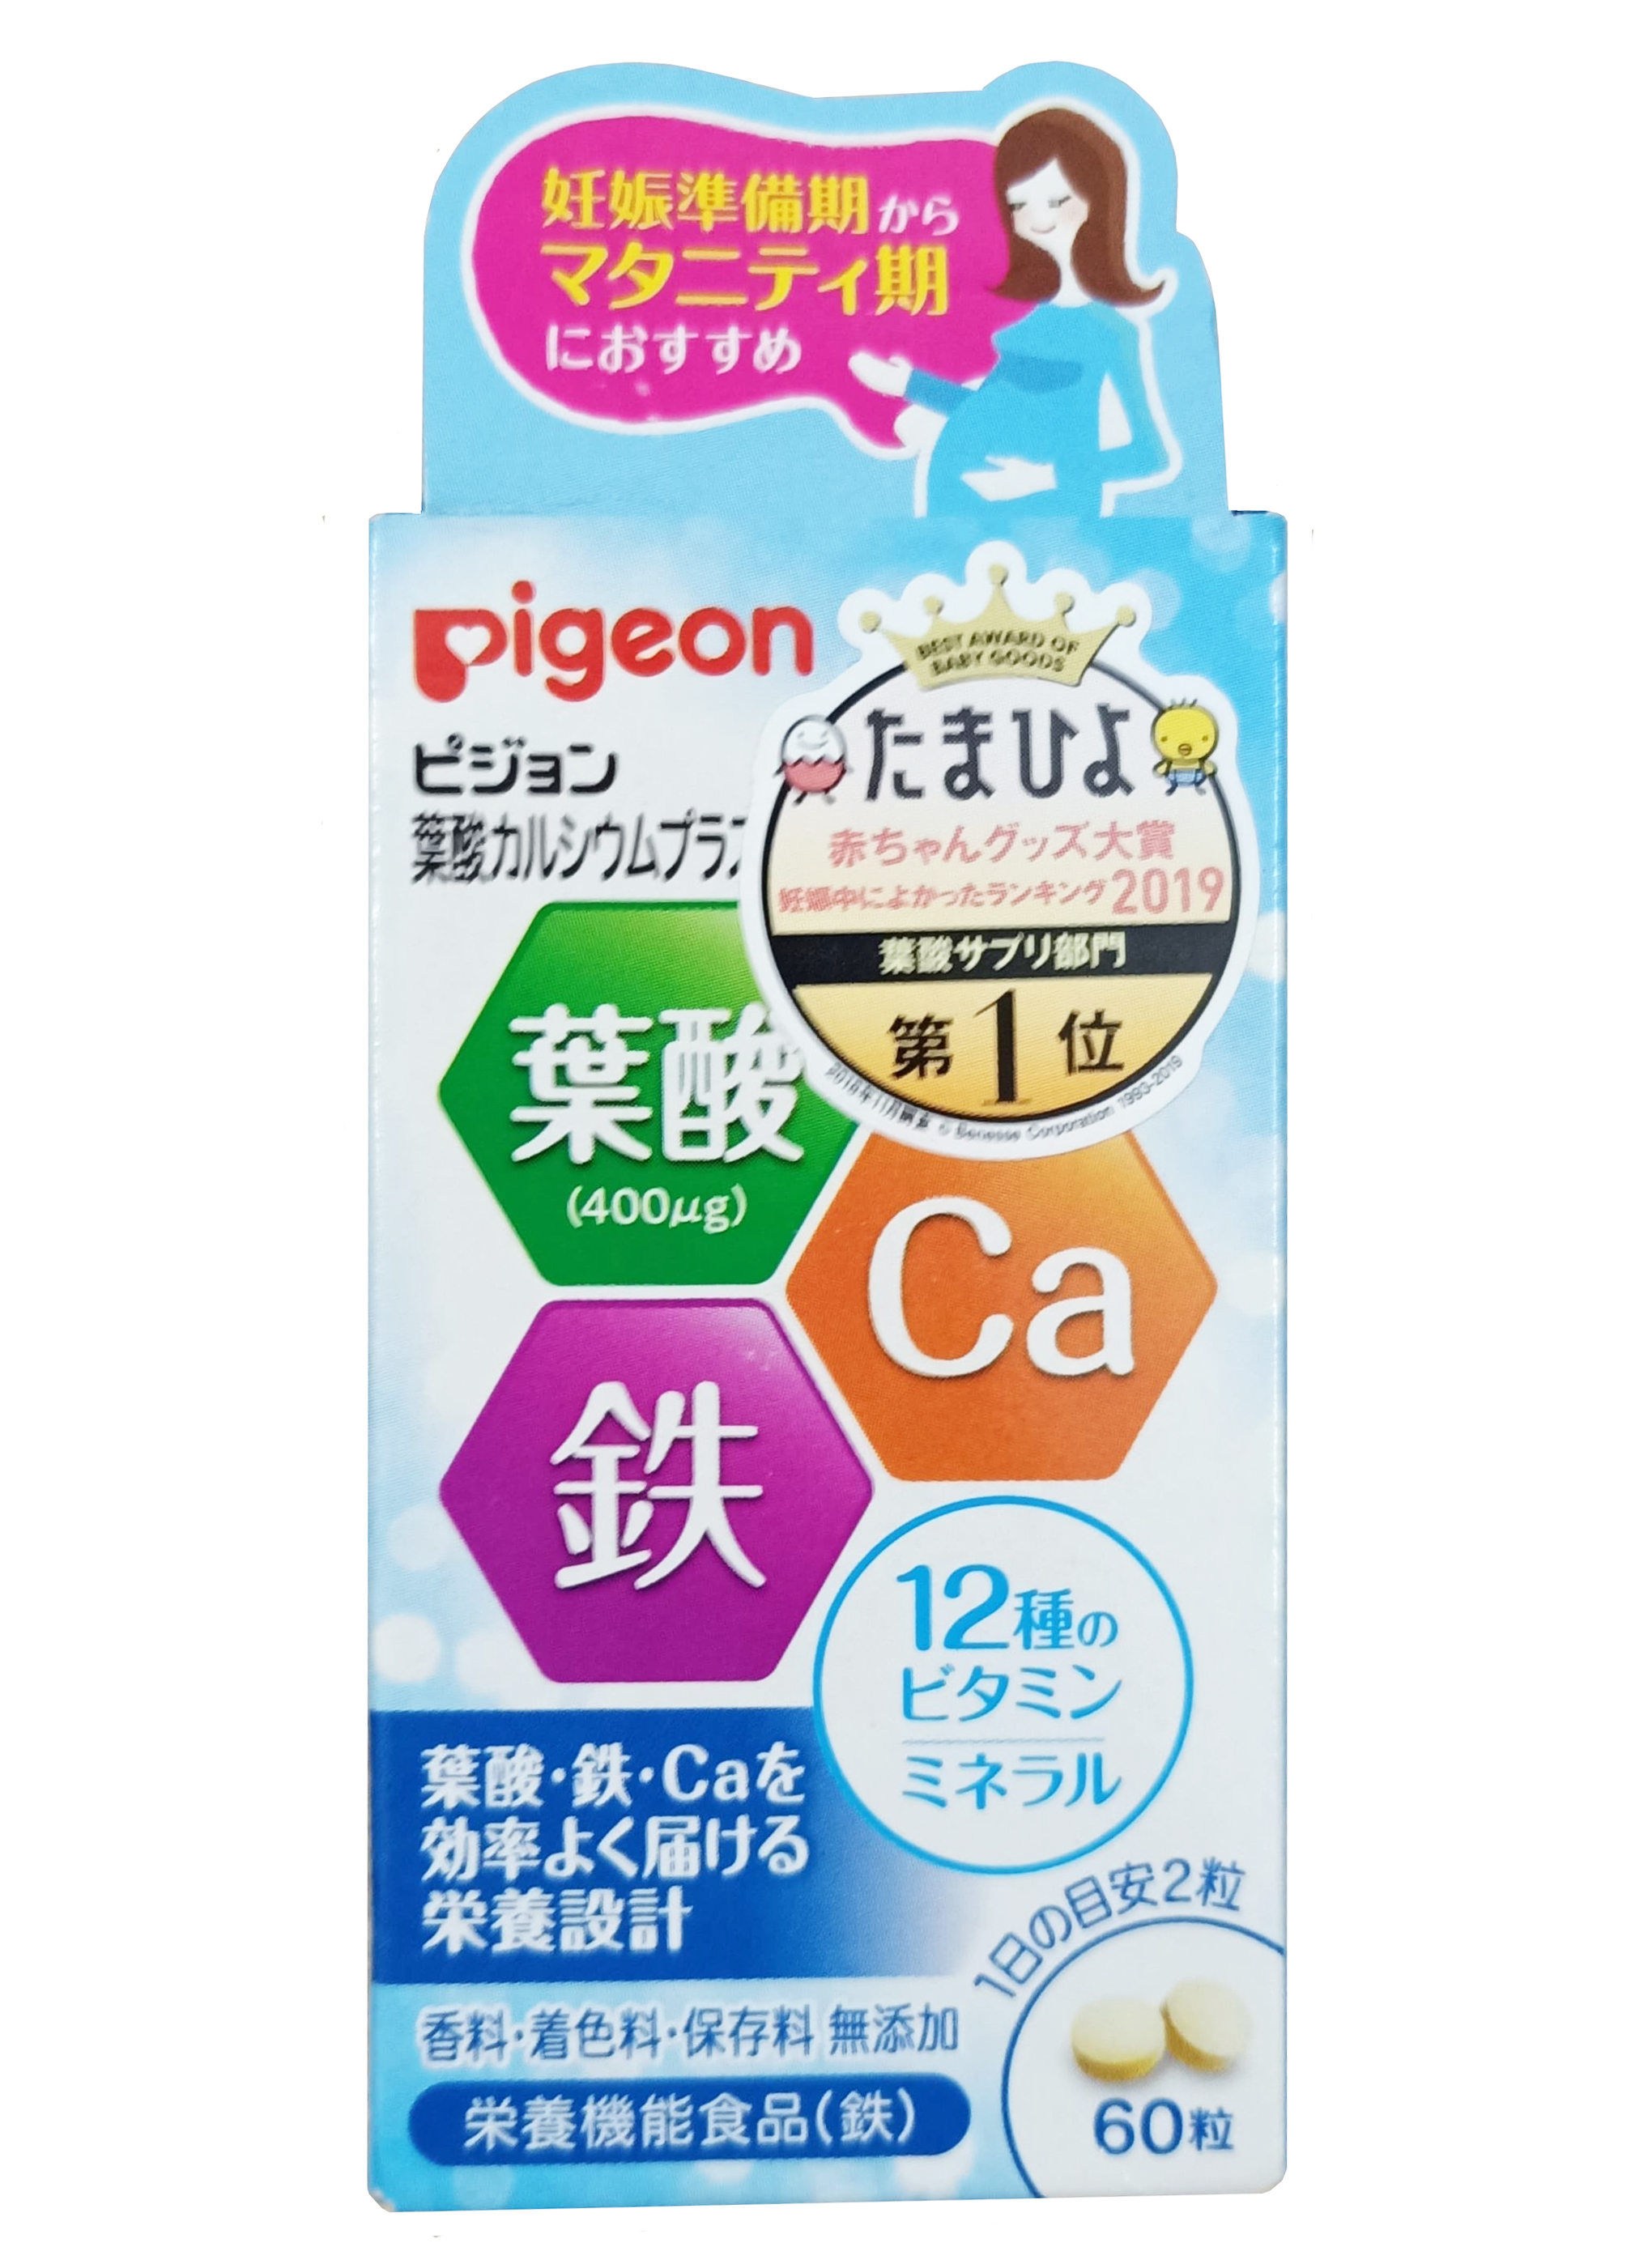  Vitamin tổng hợp cho bà bầu của nhật pigeon - Lợi ích và cách sử dụng